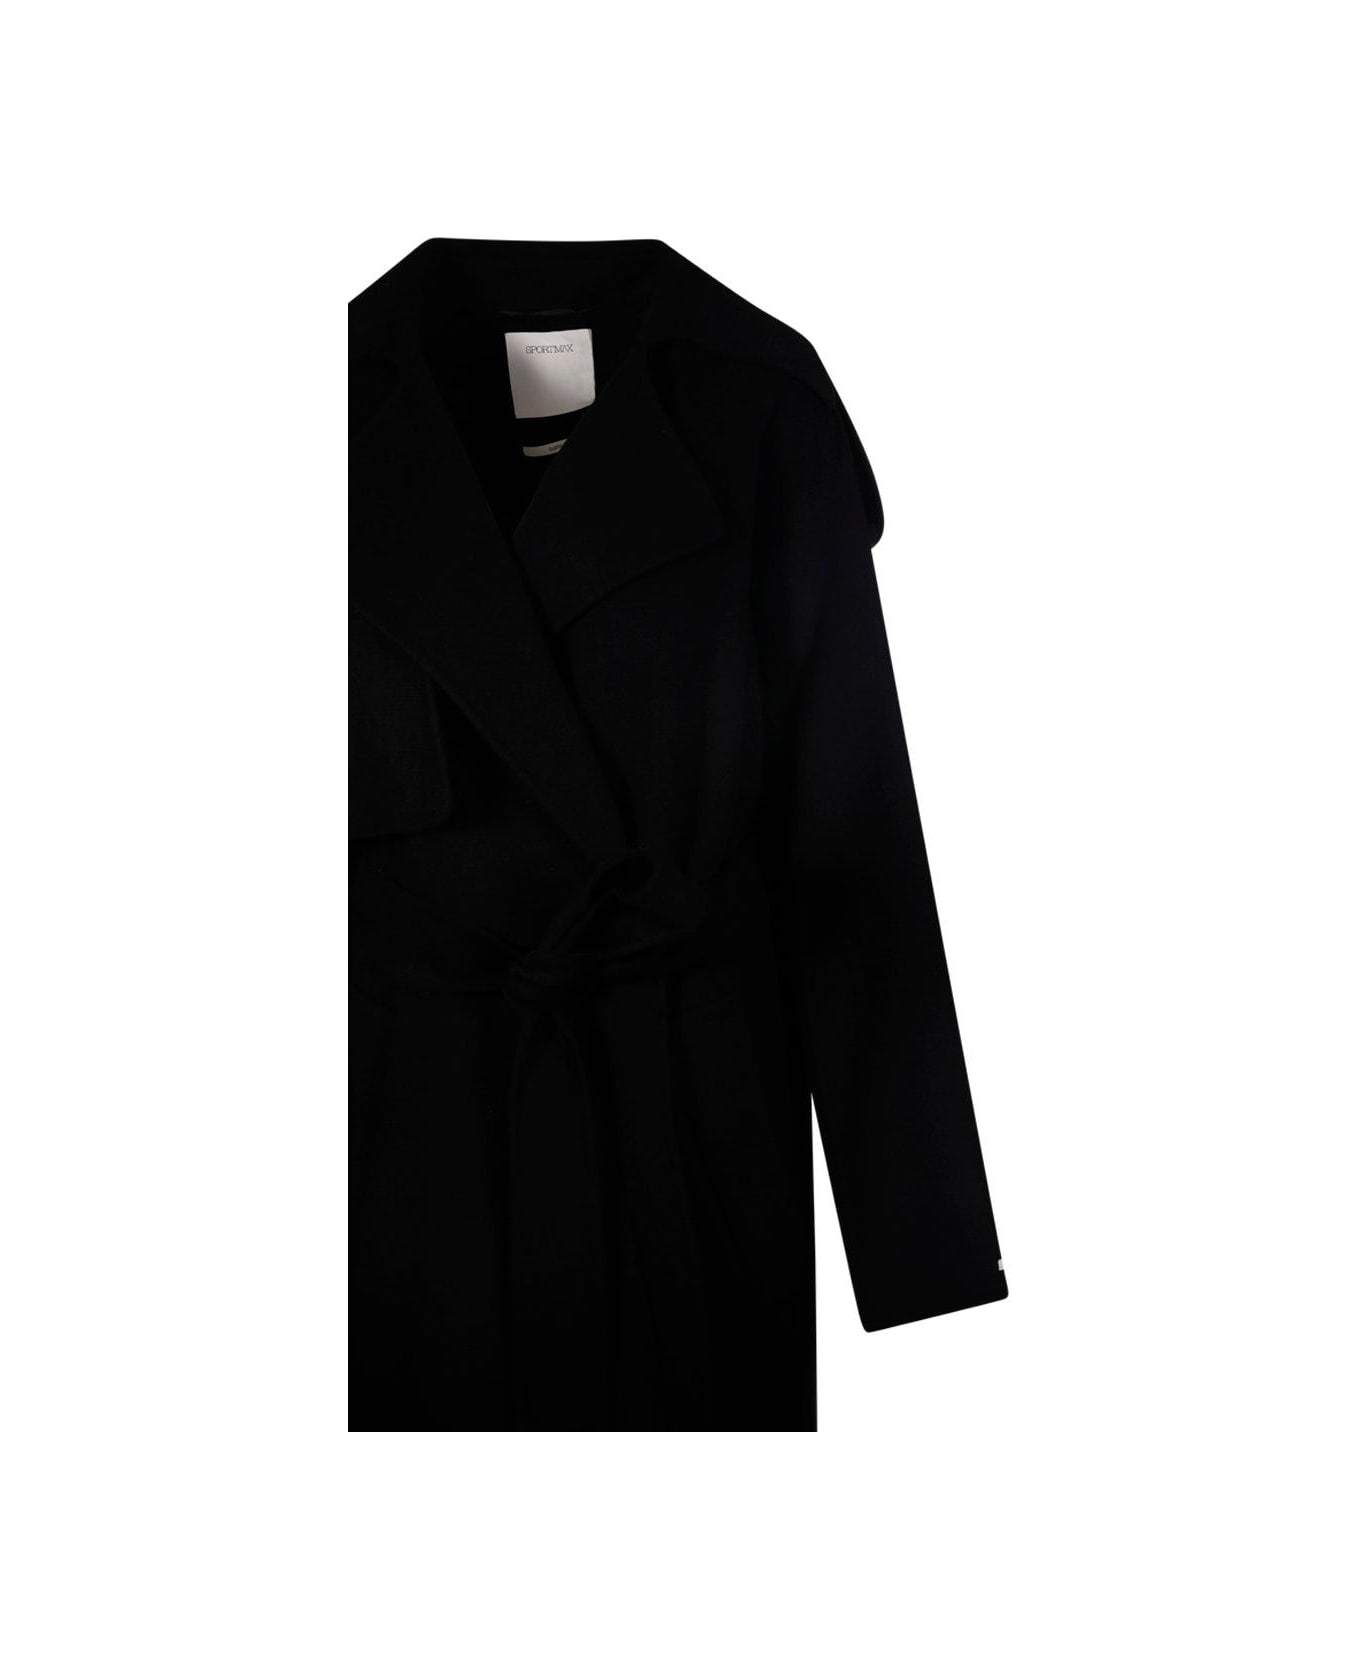 SportMax Belted Long-sleeved Coat - Black コート